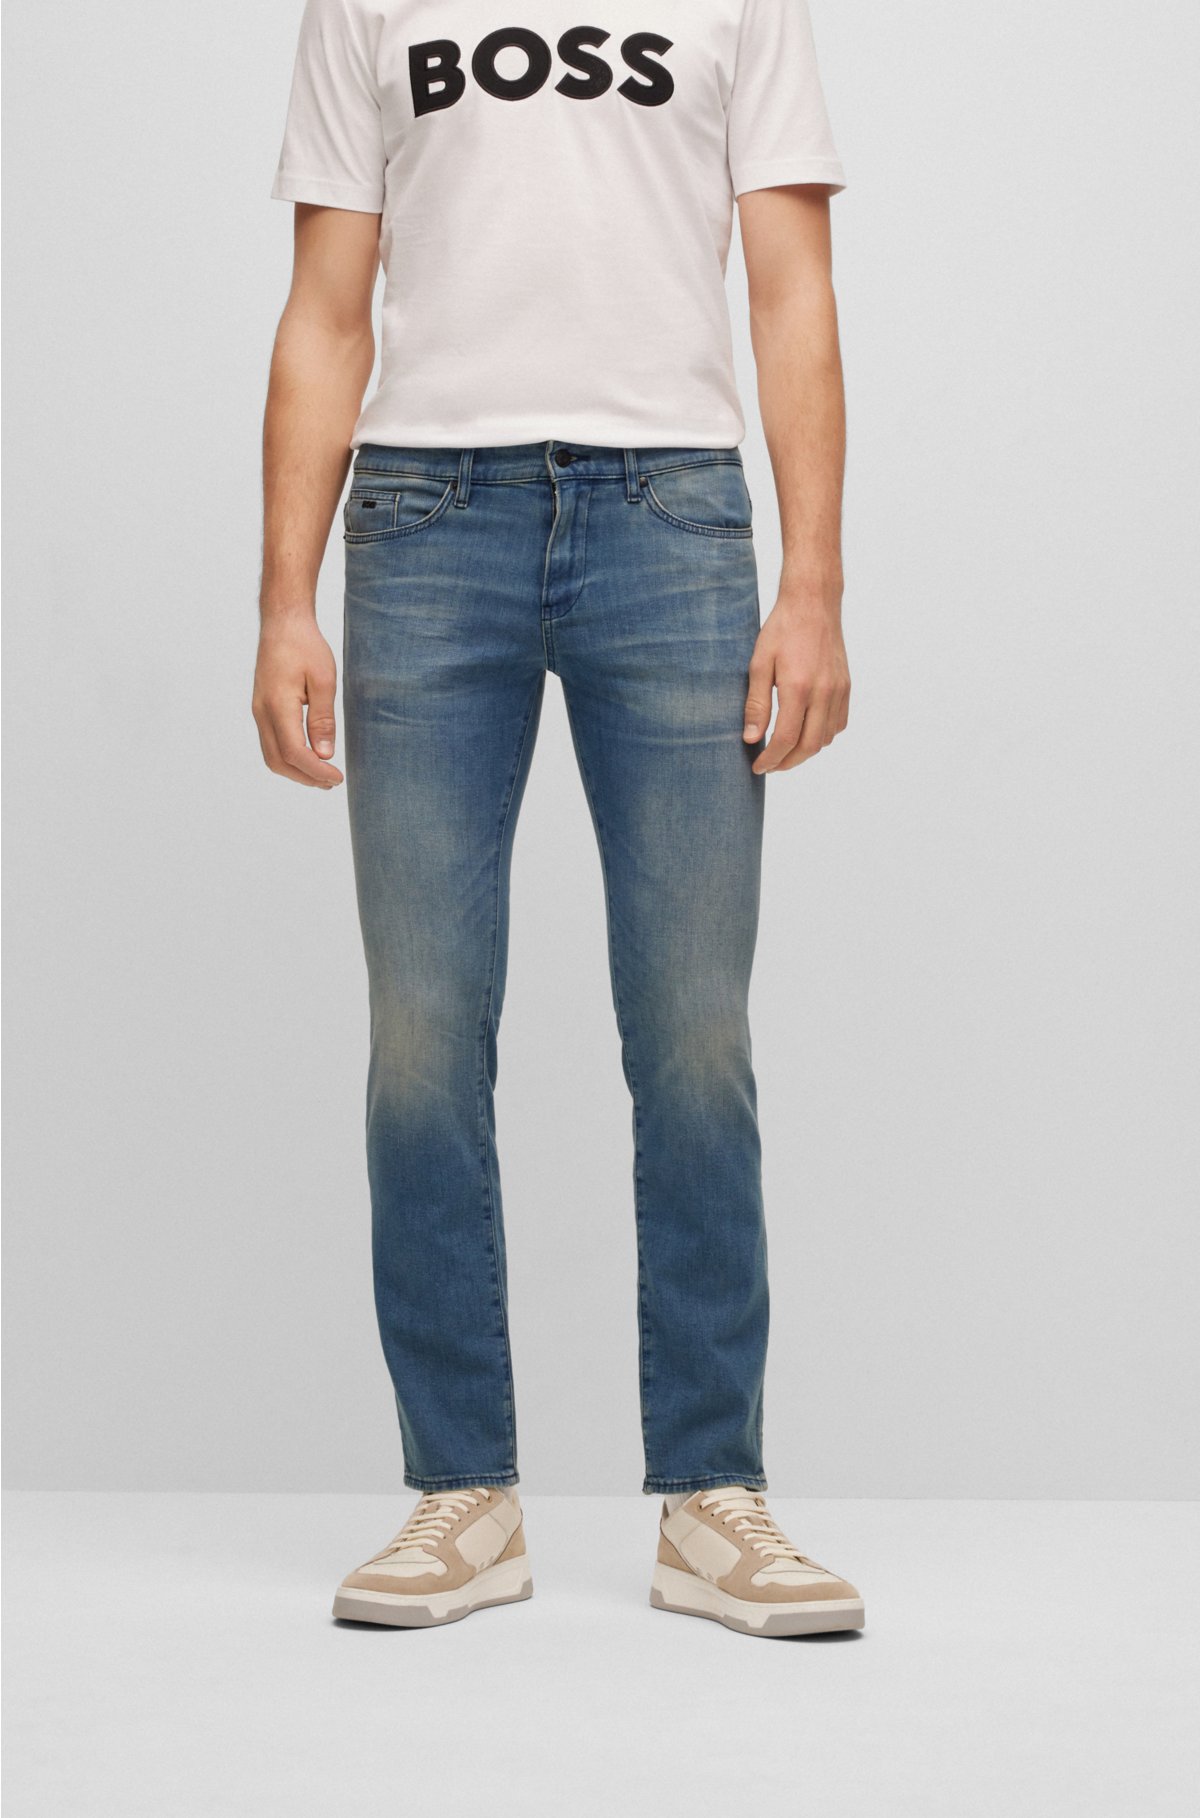 BOSS - Slim-fit jeans in super-soft blue stretch denim